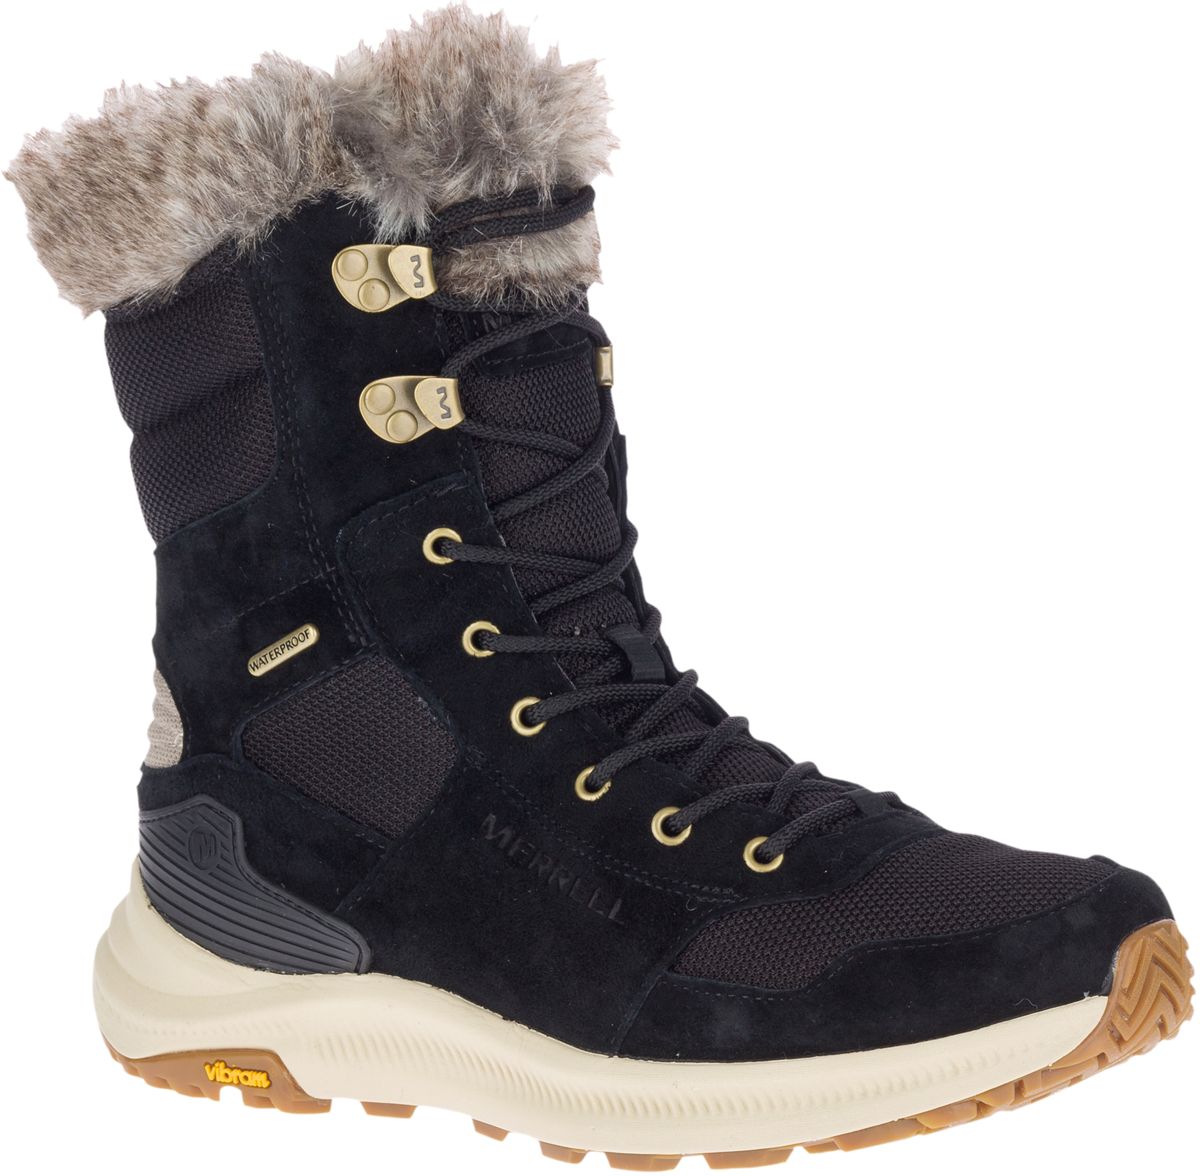 Waterproof Winter Boots | Merrell